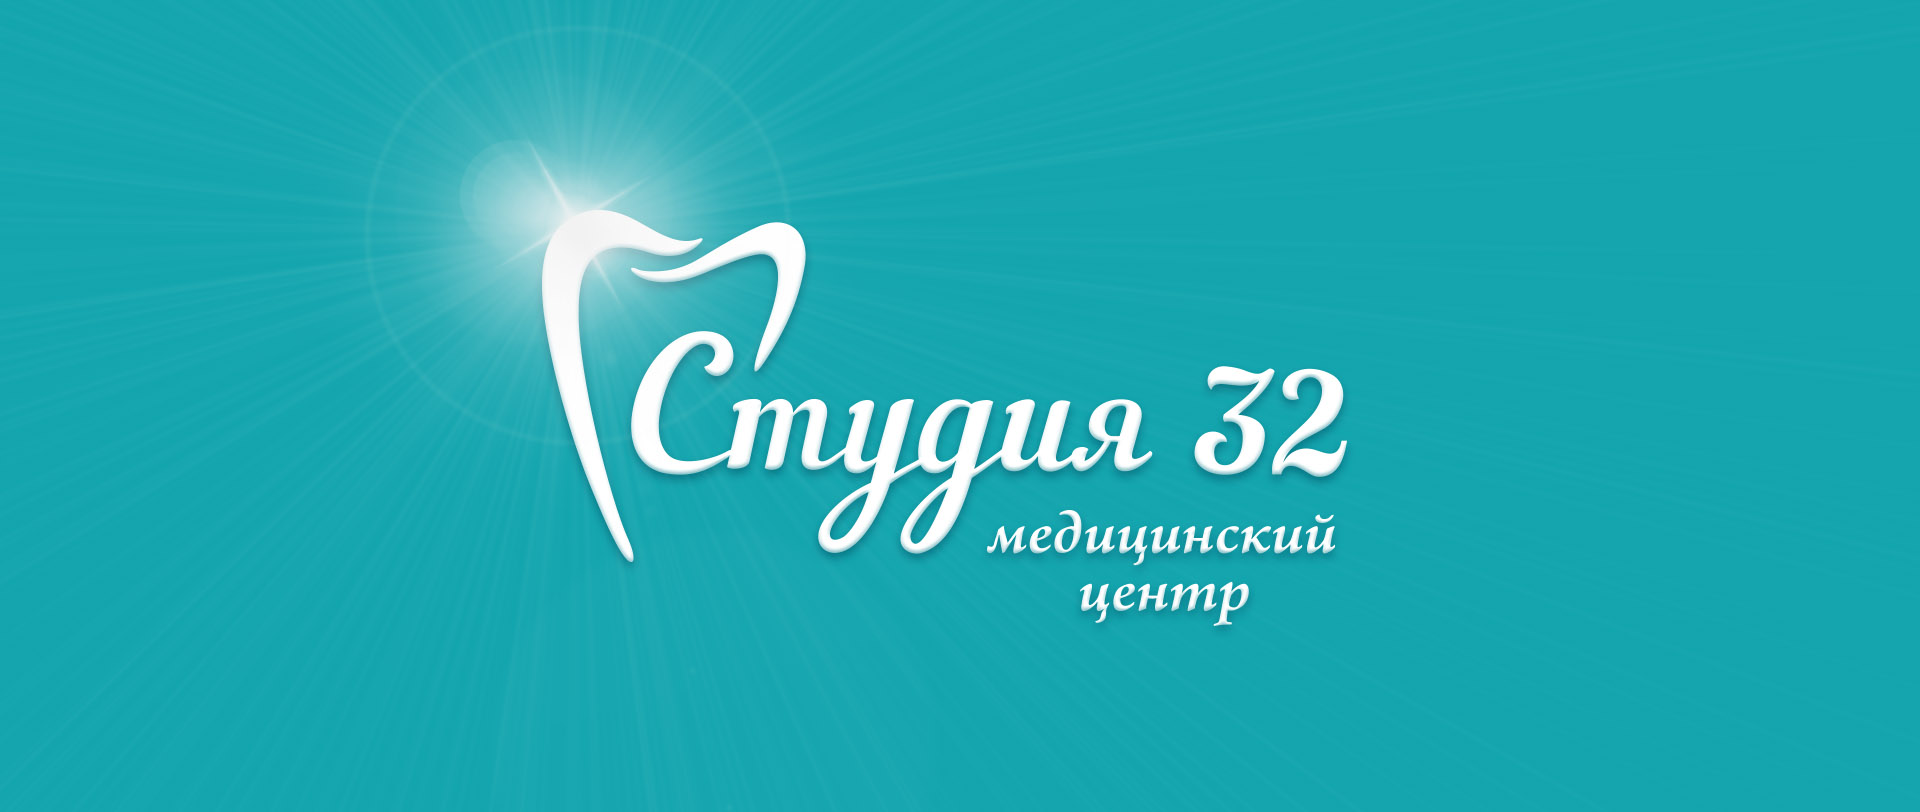 дизайн логотипа для стоматологического центра